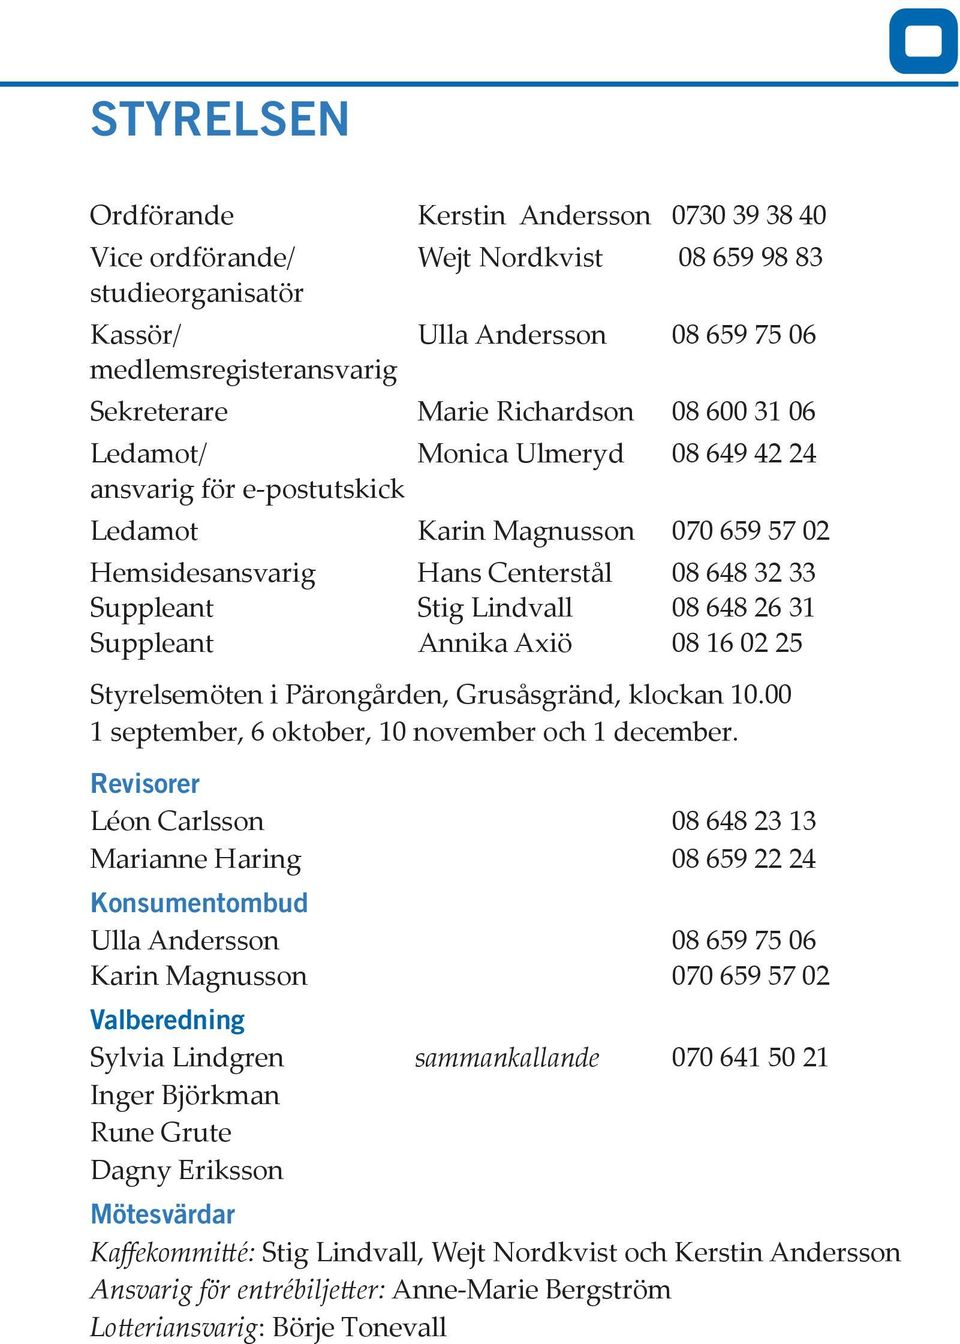 648 26 31 Suppleant Annika Axiö 08 16 02 25 Styrelsemöten i Pärongården, Grusåsgränd, klockan 10.00 1 september, 6 oktober, 10 november och 1 december.